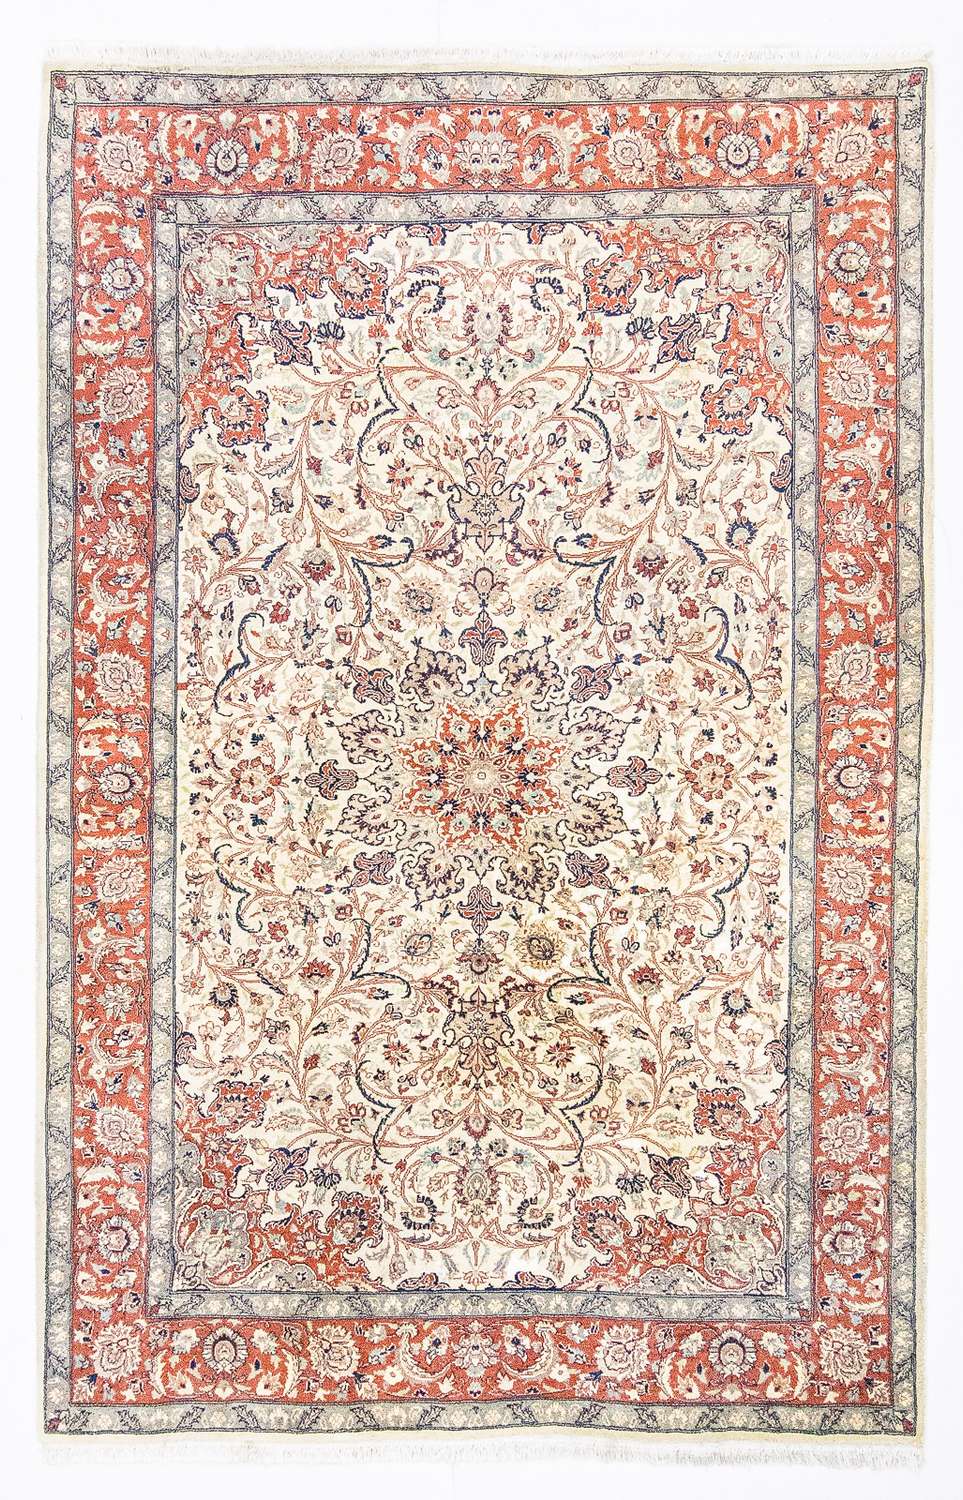 Orientalsk teppe - 223 x 143 cm - beige